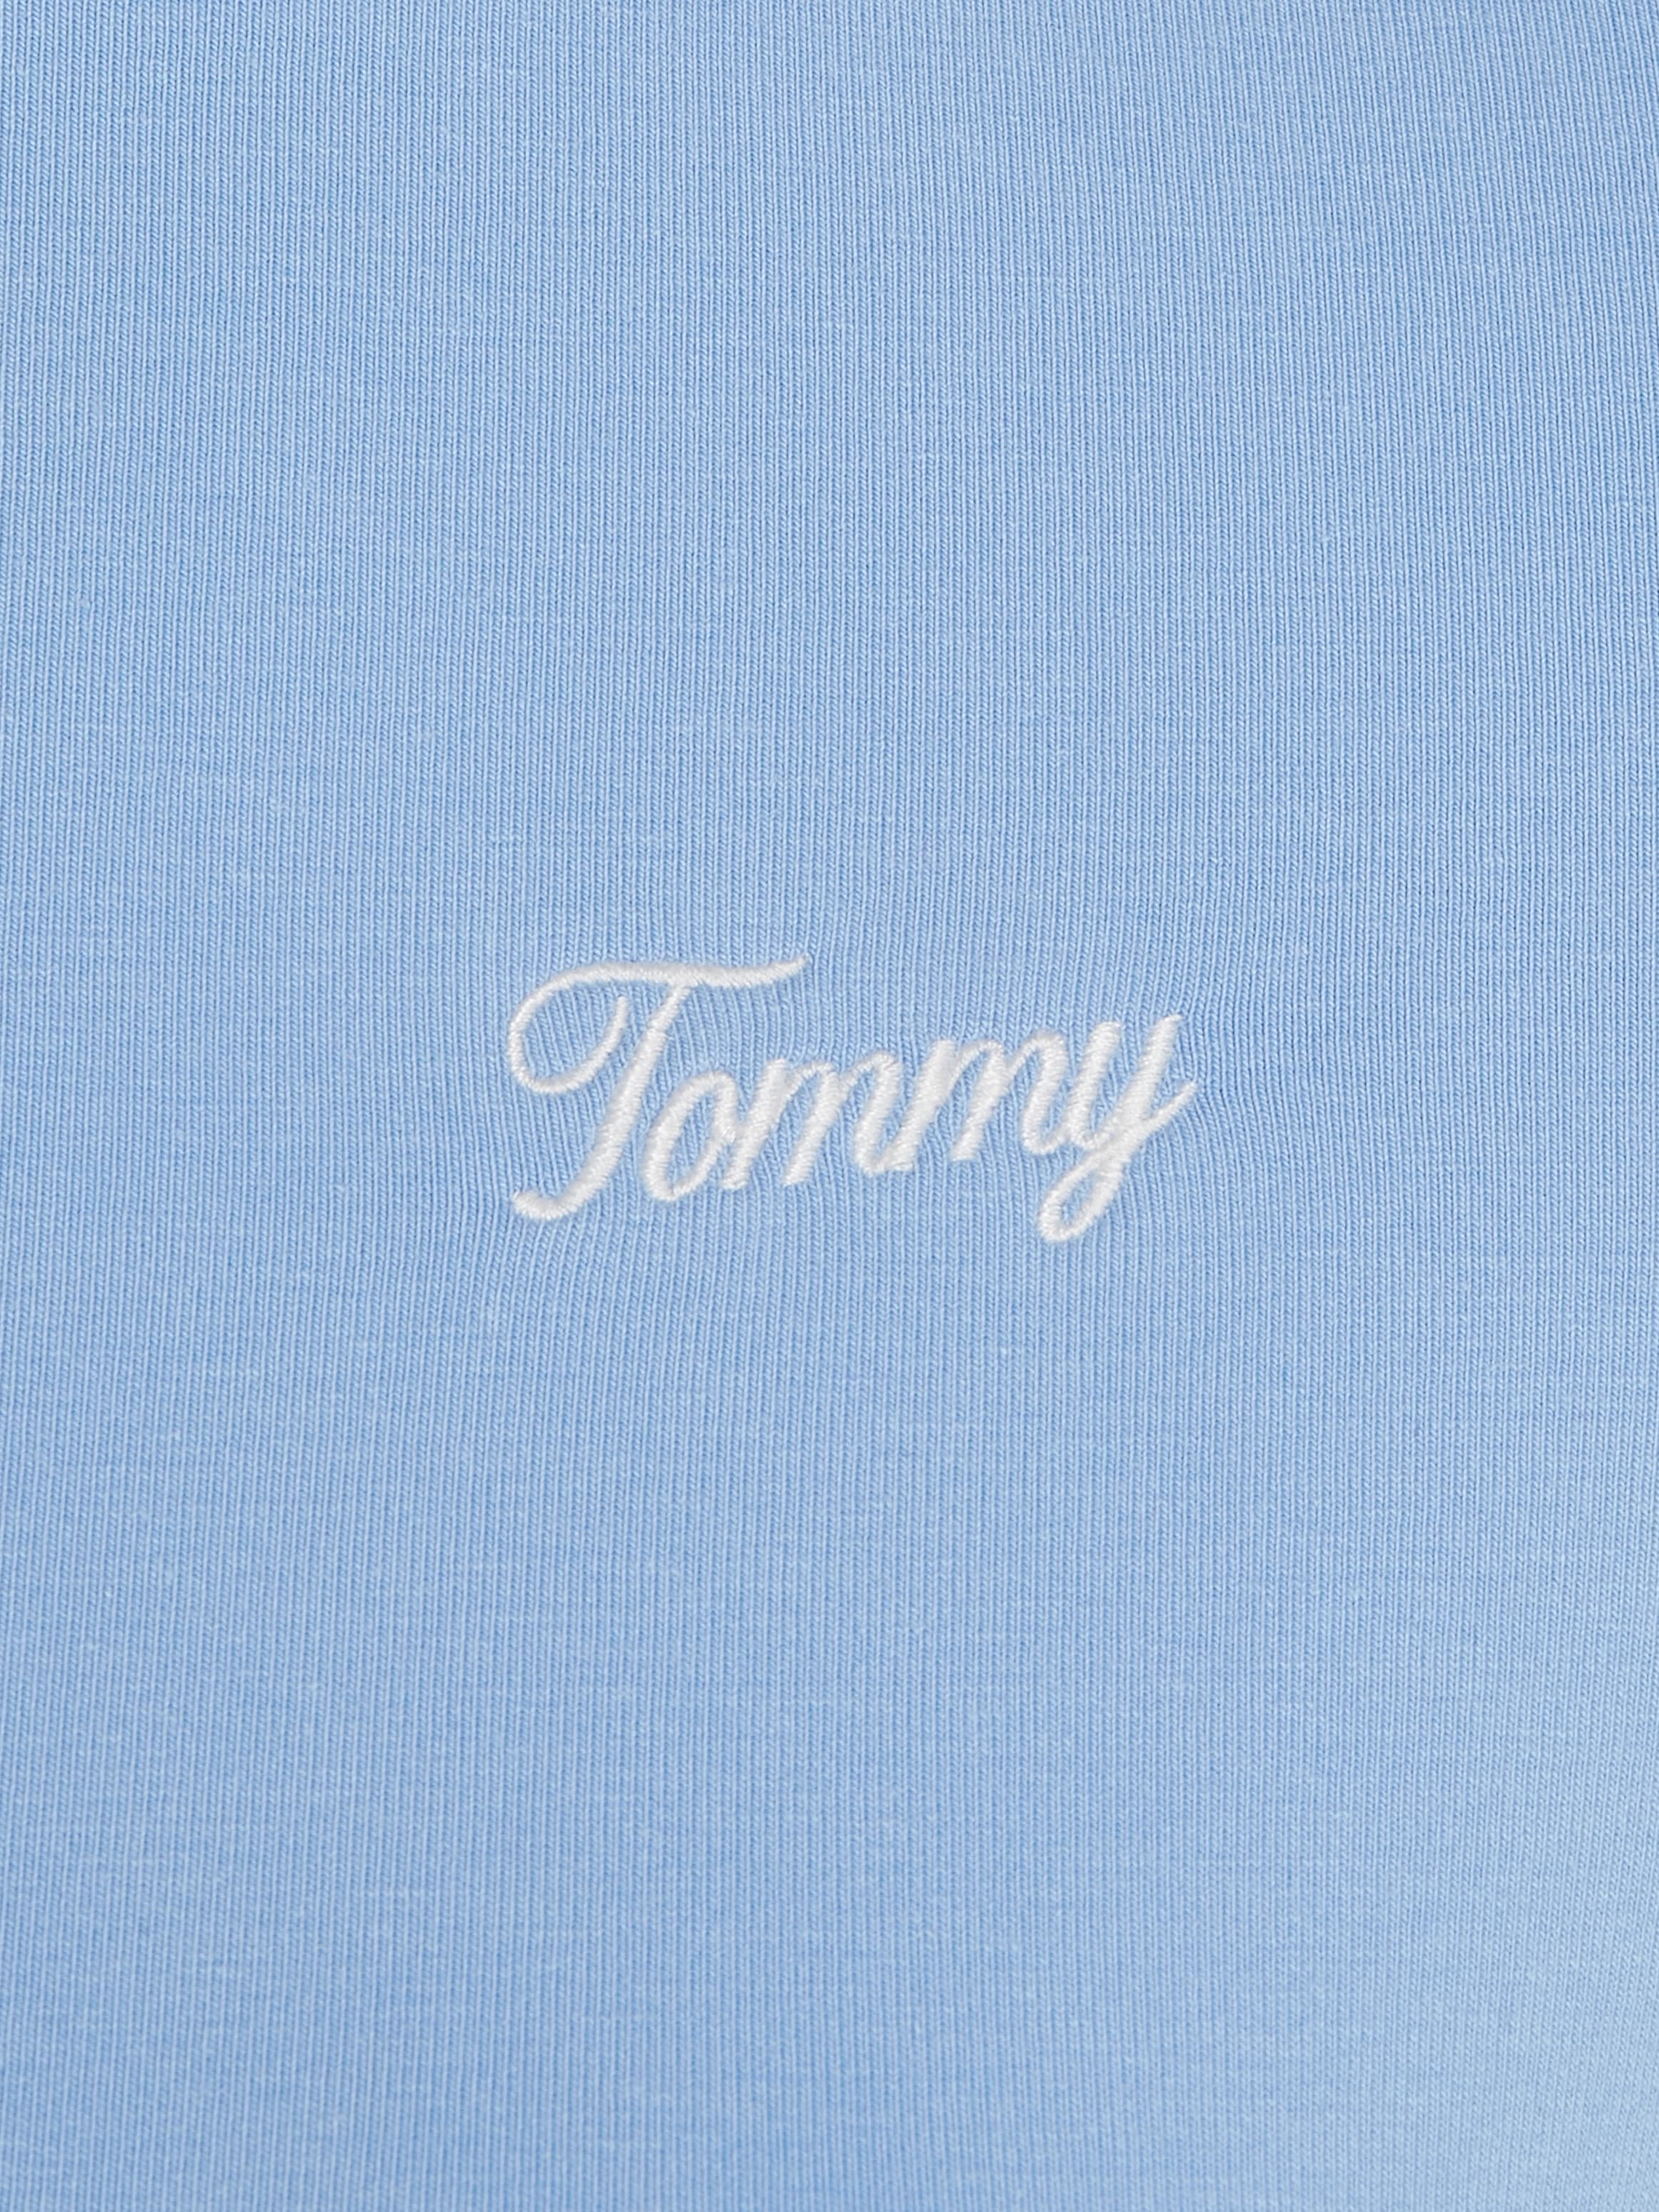 Tommy Jeans Jerseykleid »TJW SCRIPT SS BODYCON DRESS EXT«, mit Tommy Jeans Flagge